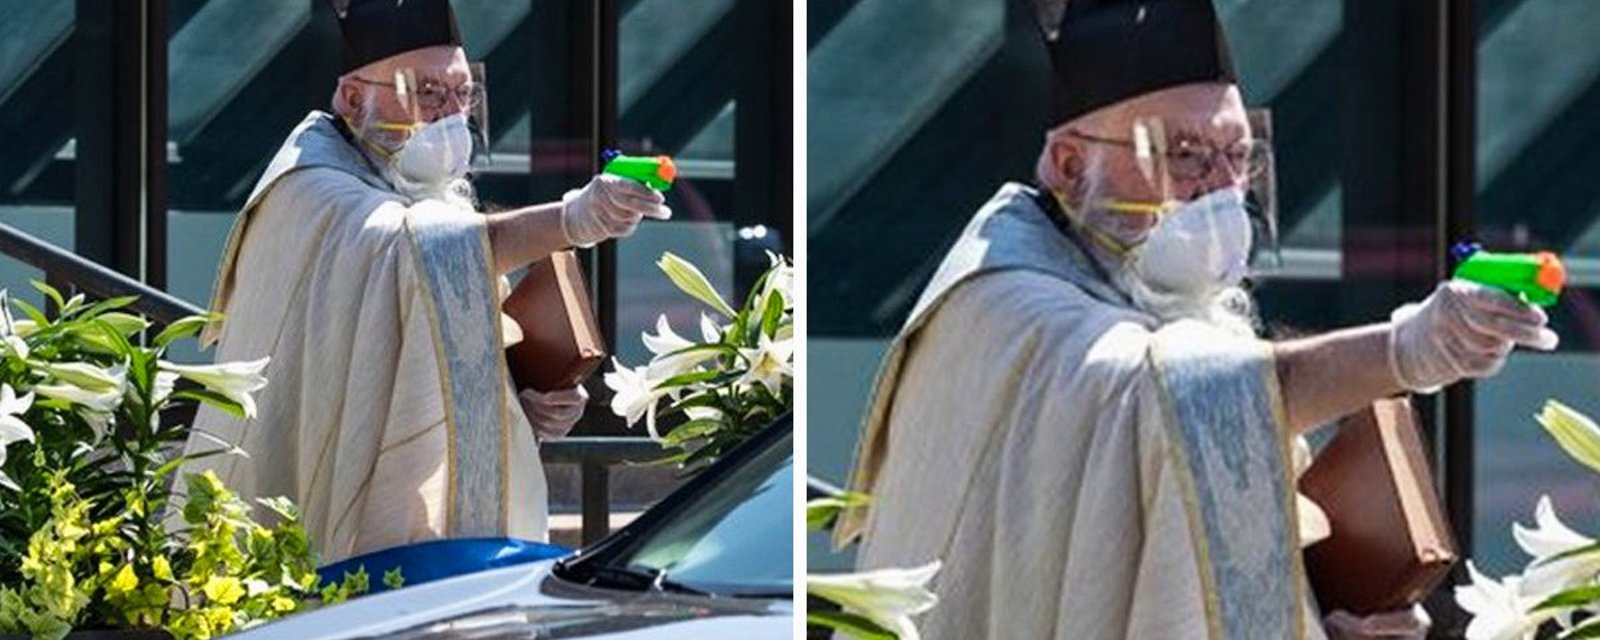 COVID-19: un curé a béni ses paroissiens… avec un pistolet à eau